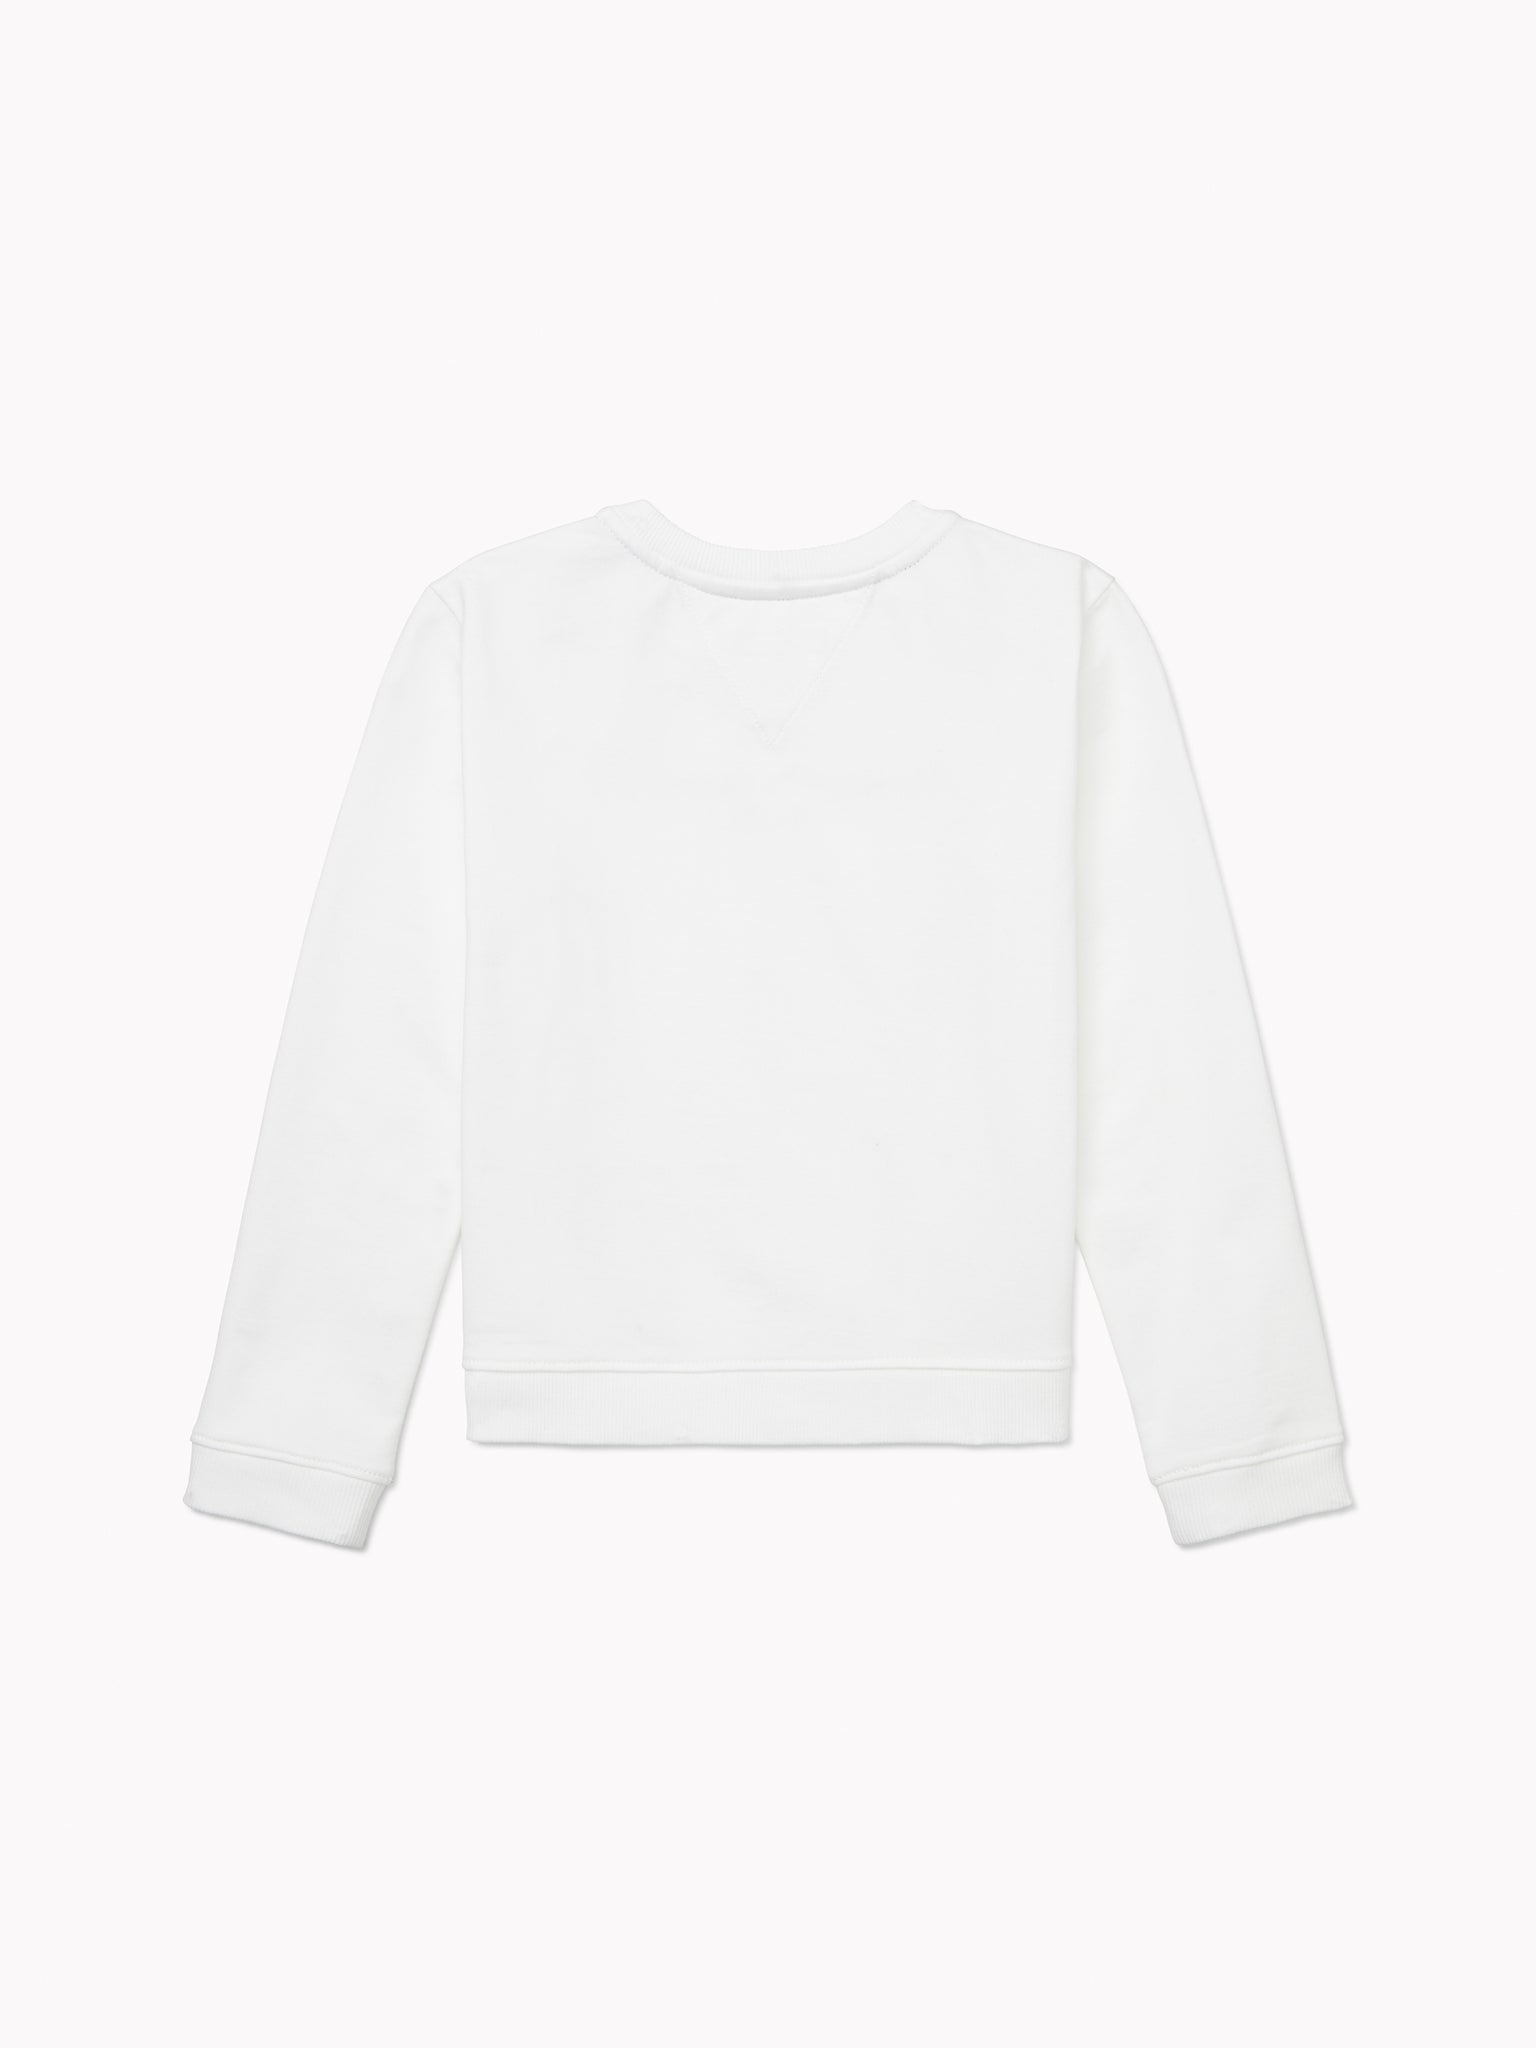 Signature Popover Sweatshirt (Girls) - White